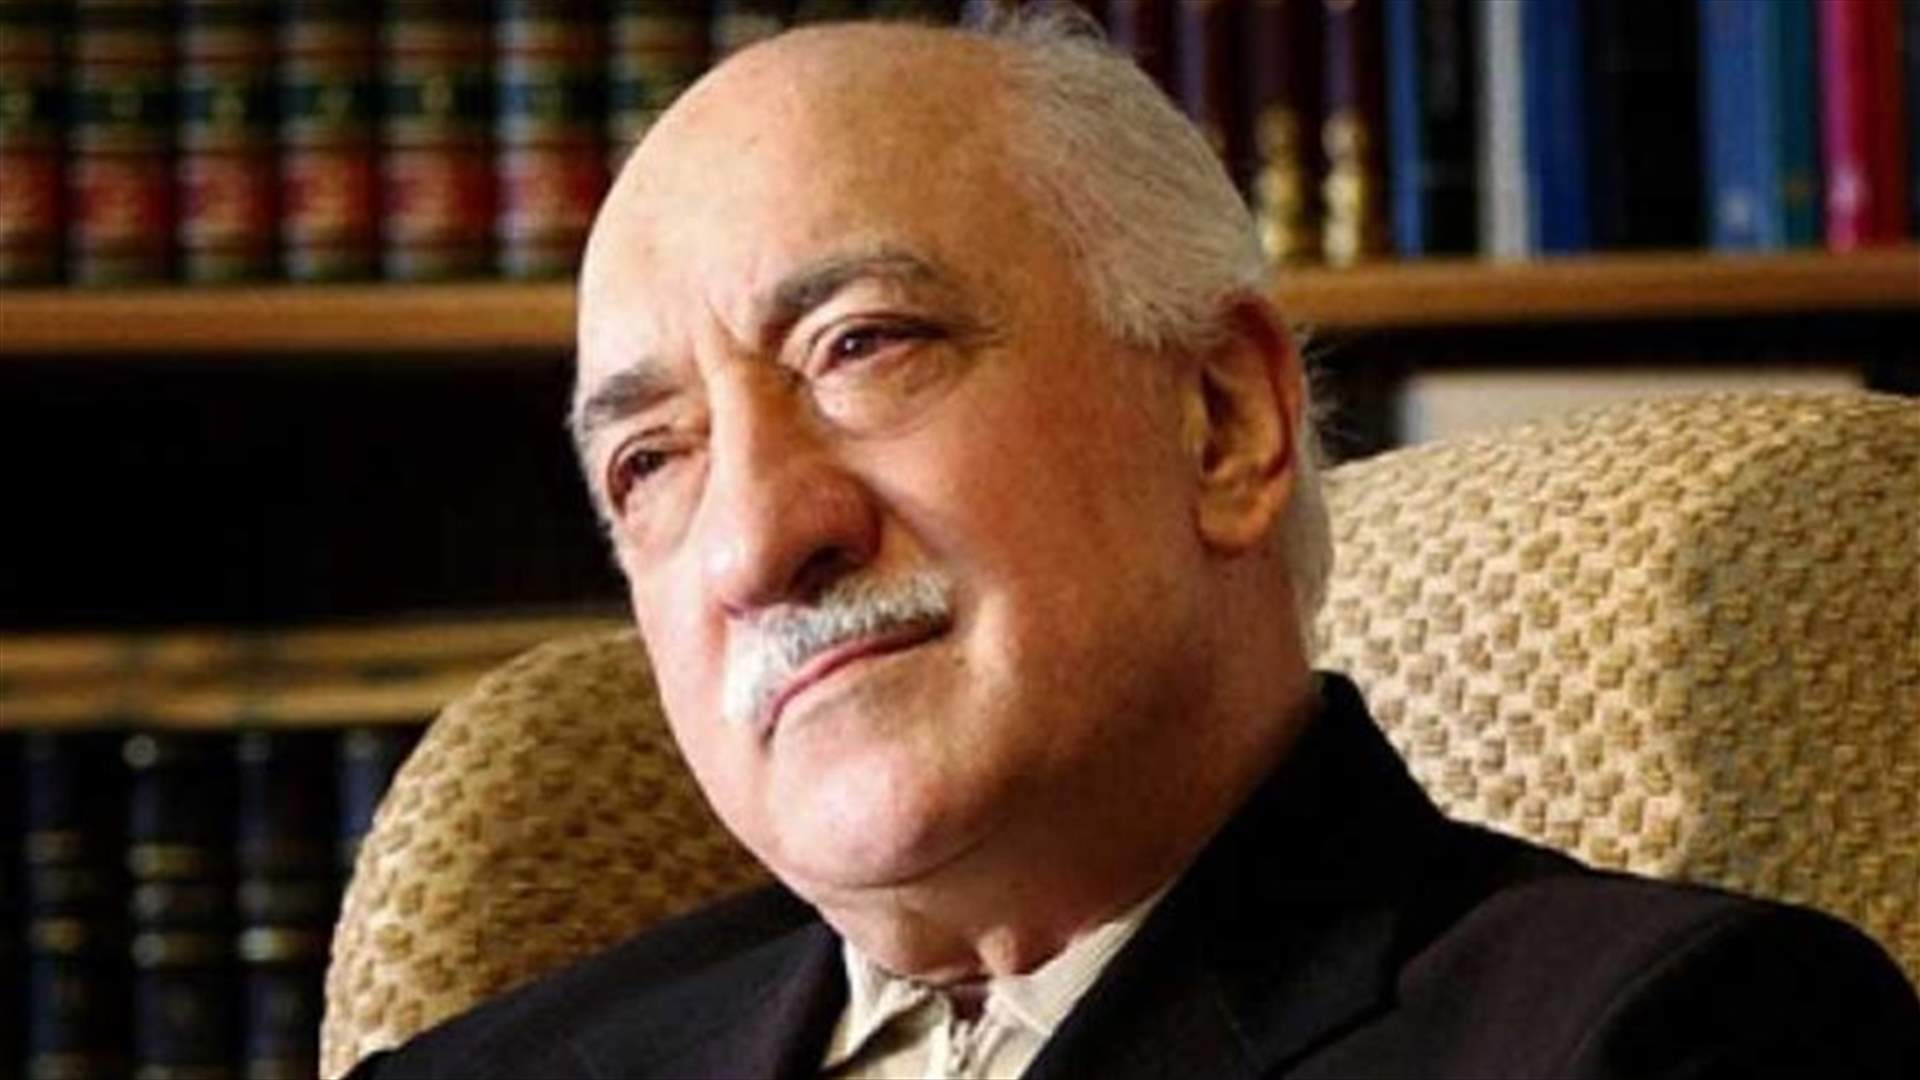 Turkey orders arrest of 110 people over Gulen links - media